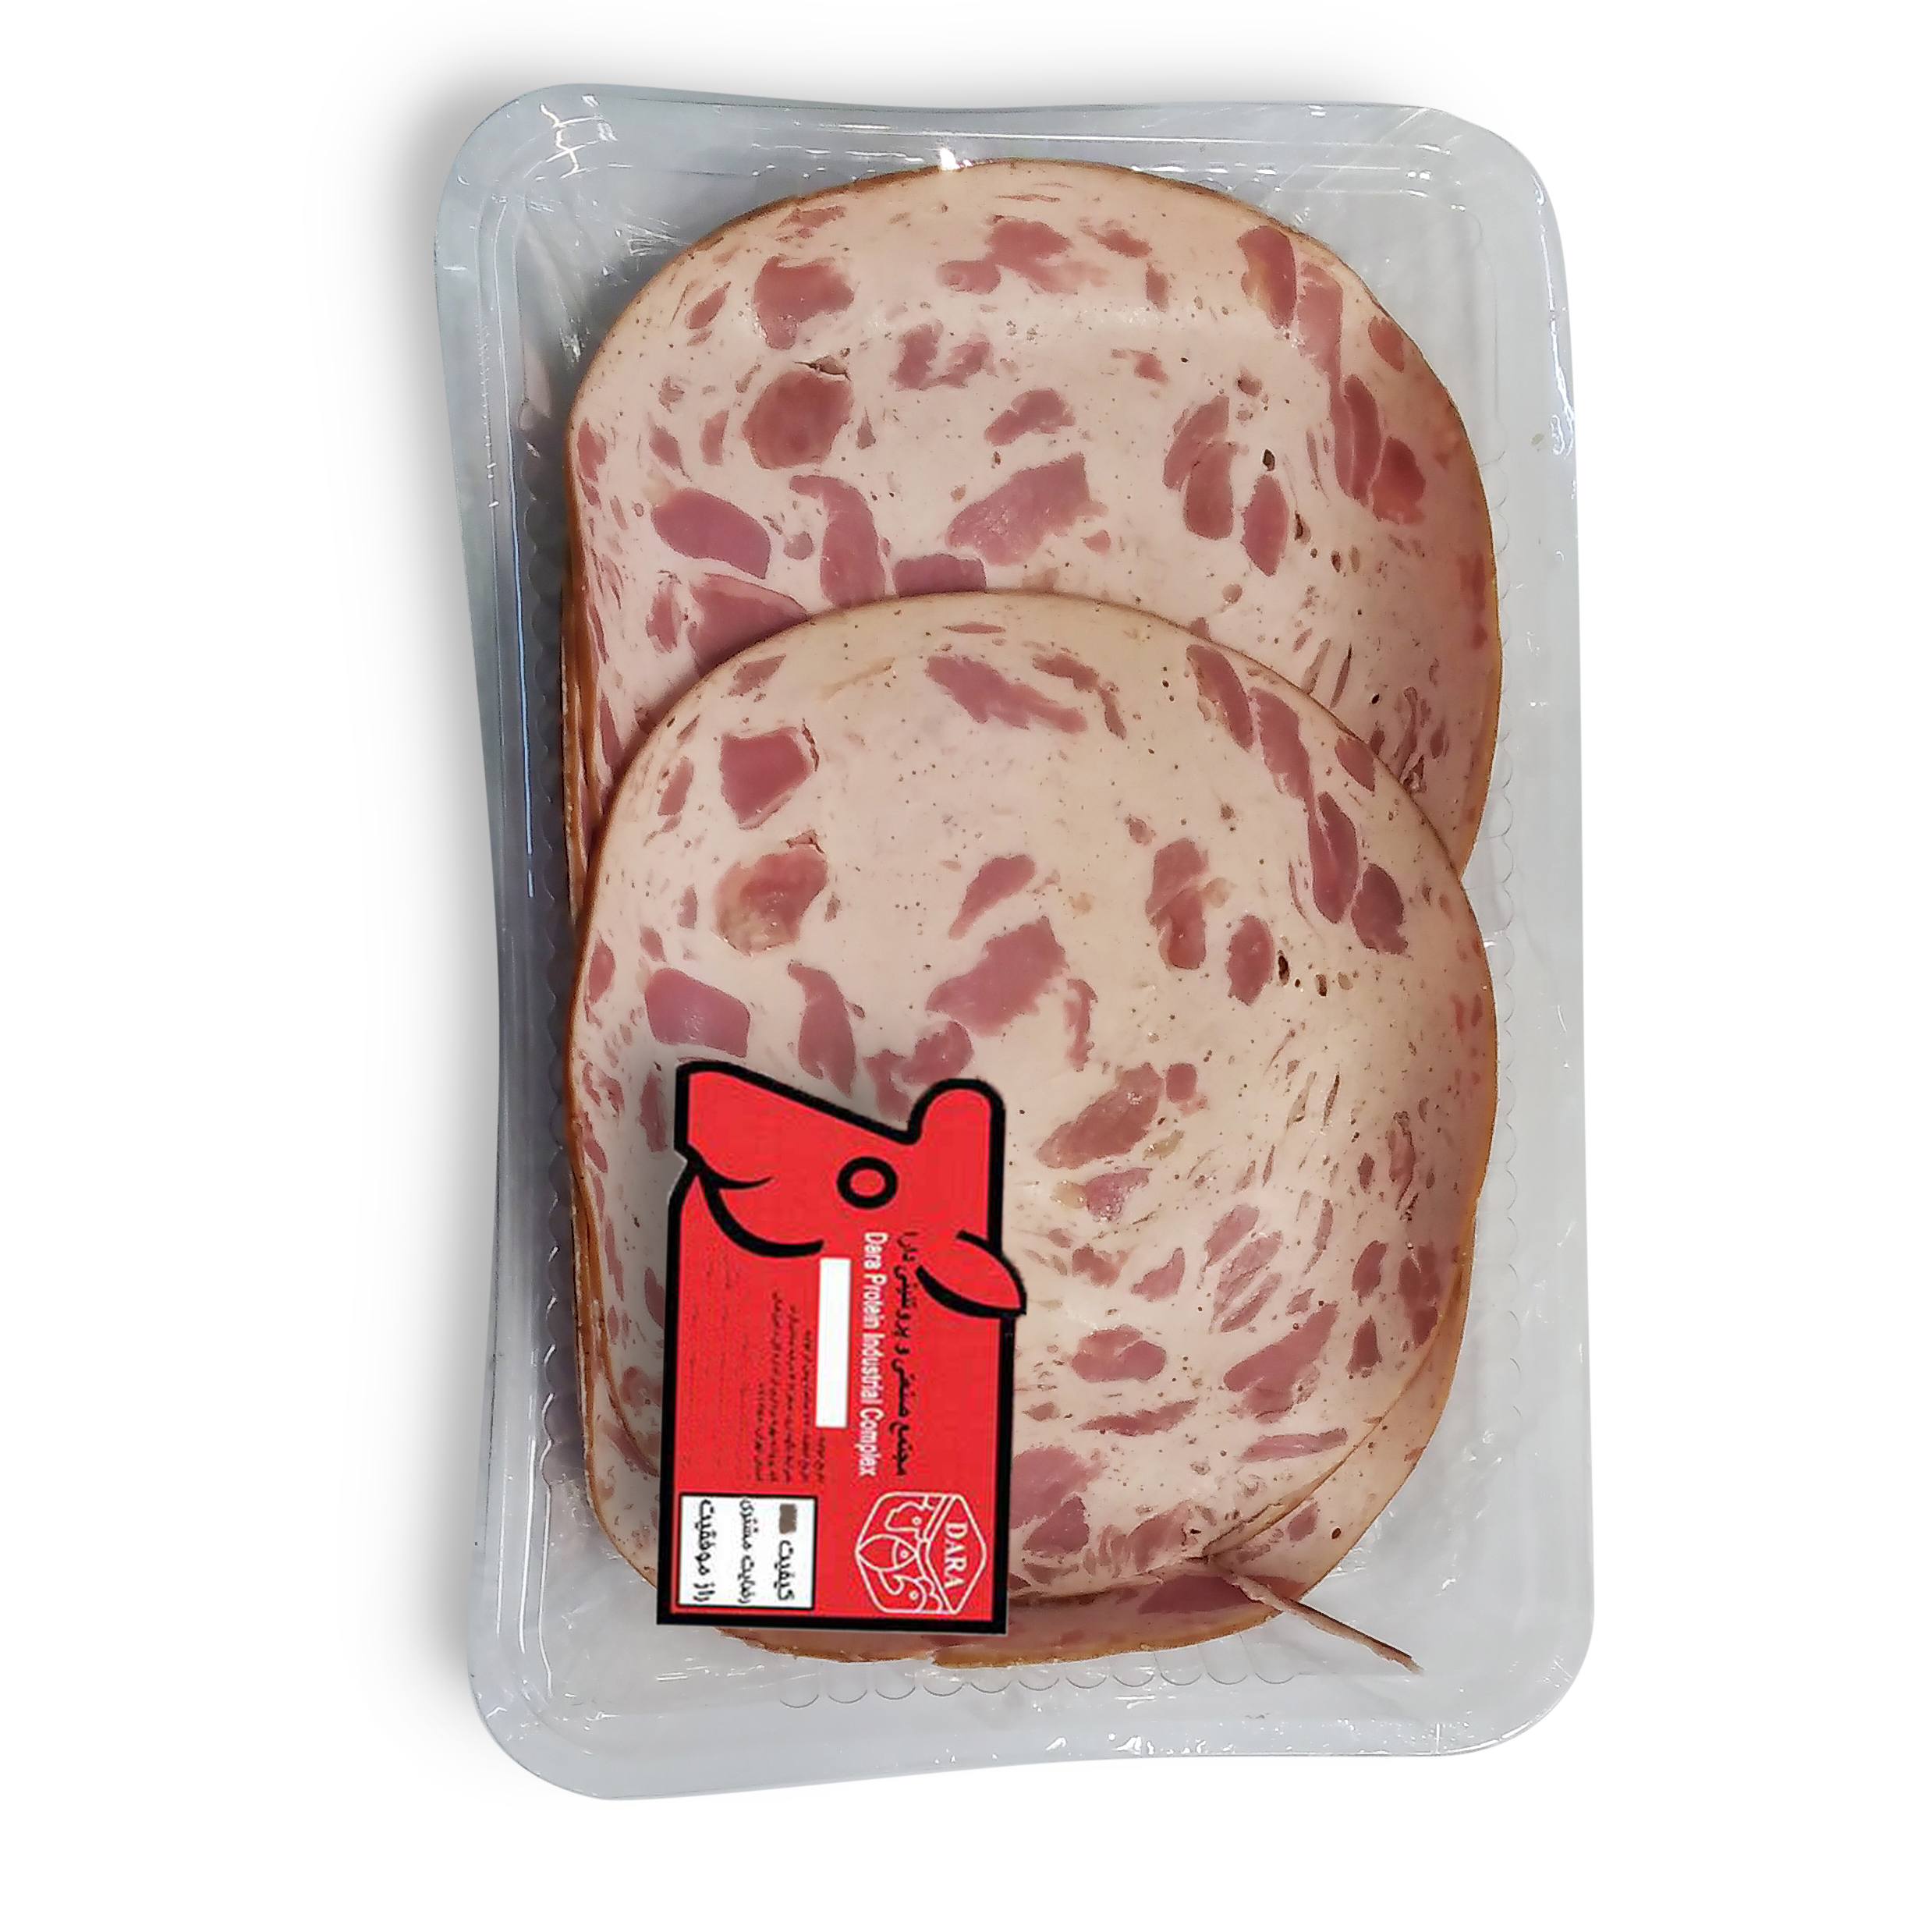 ژامبون گوشت قرمز 70 درصد تنوری دارا - 1 کیلوگرم